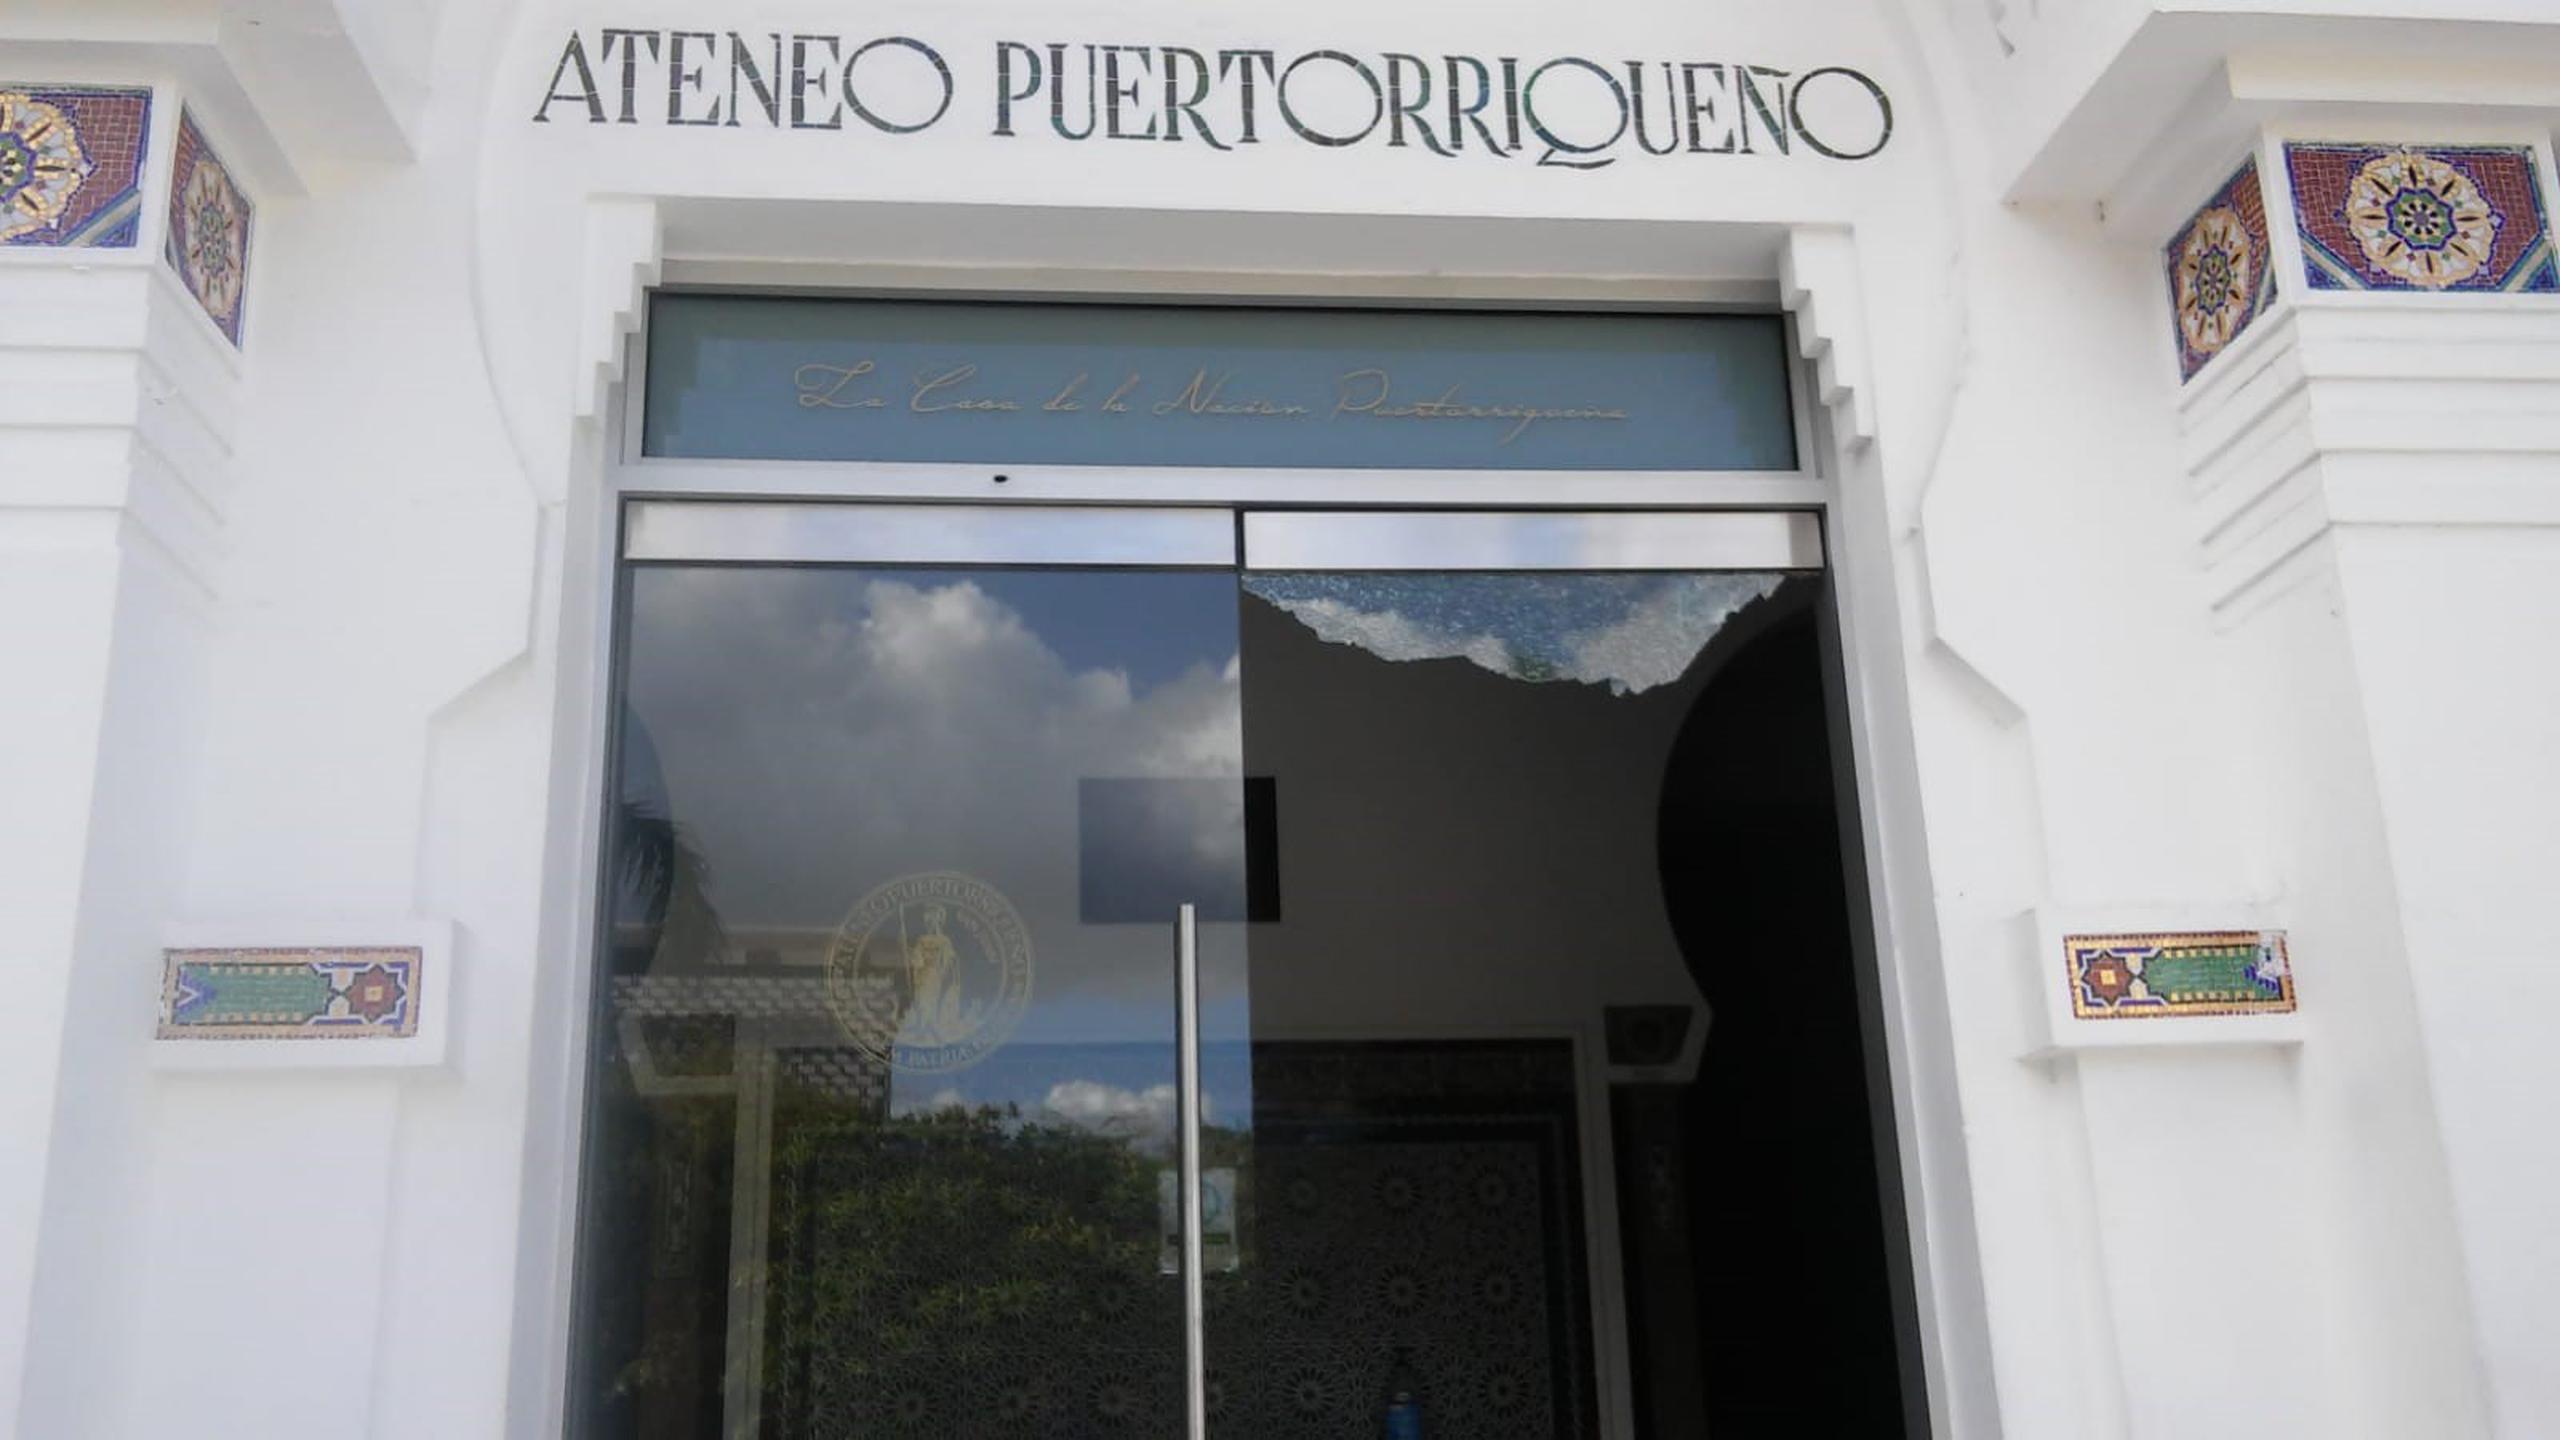 Daños en el Ateneo Puertorriqueño tras un tiroteo